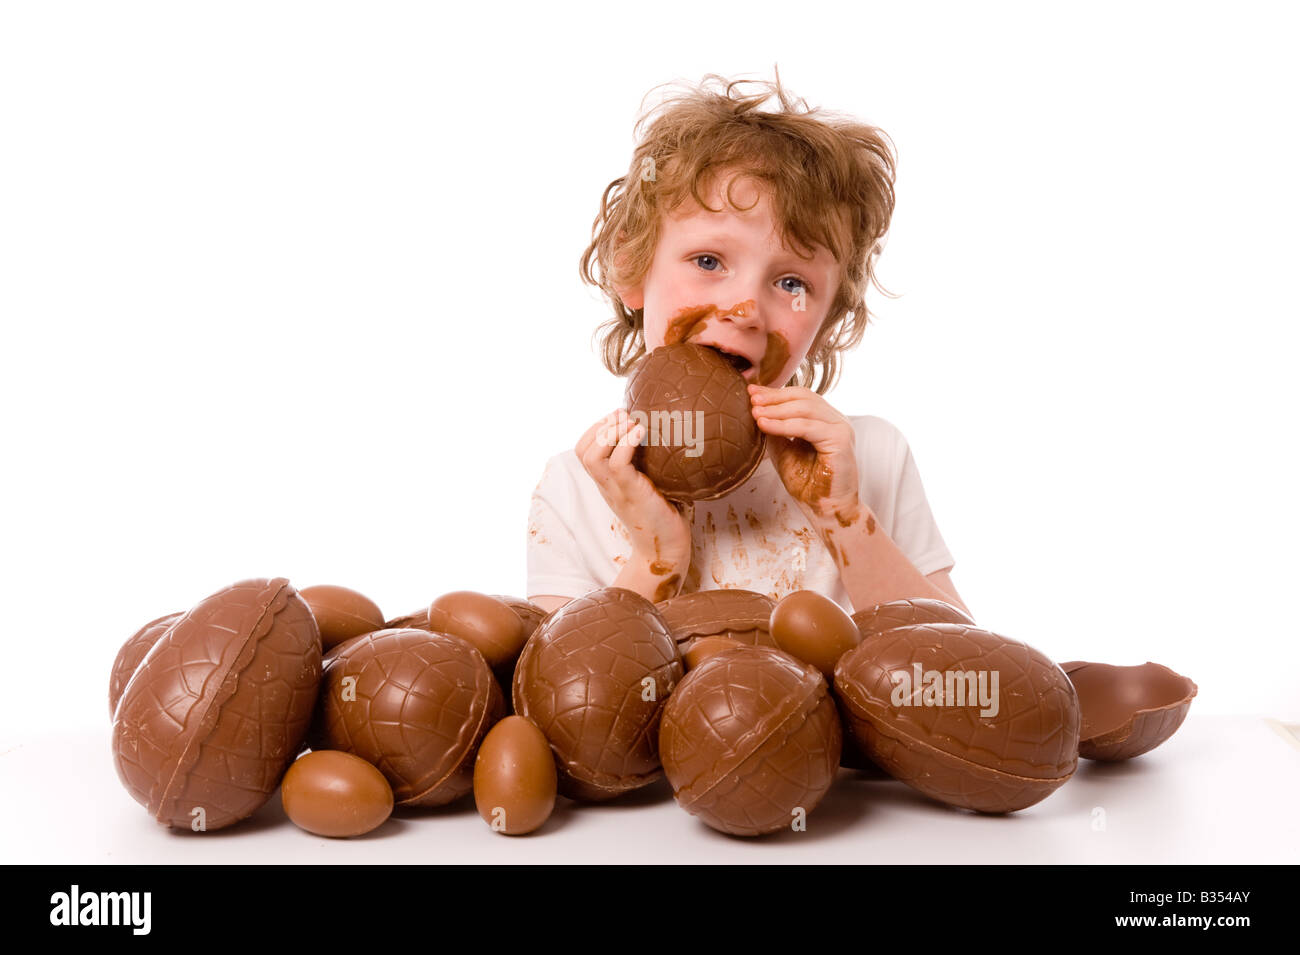 Jeune enfant aux cheveux courts désordonnés avec du chocolat sur les mains et le visage, mangeant un oeuf de Pâques avec plus d'oeufs non emballés au premier plan. Banque D'Images